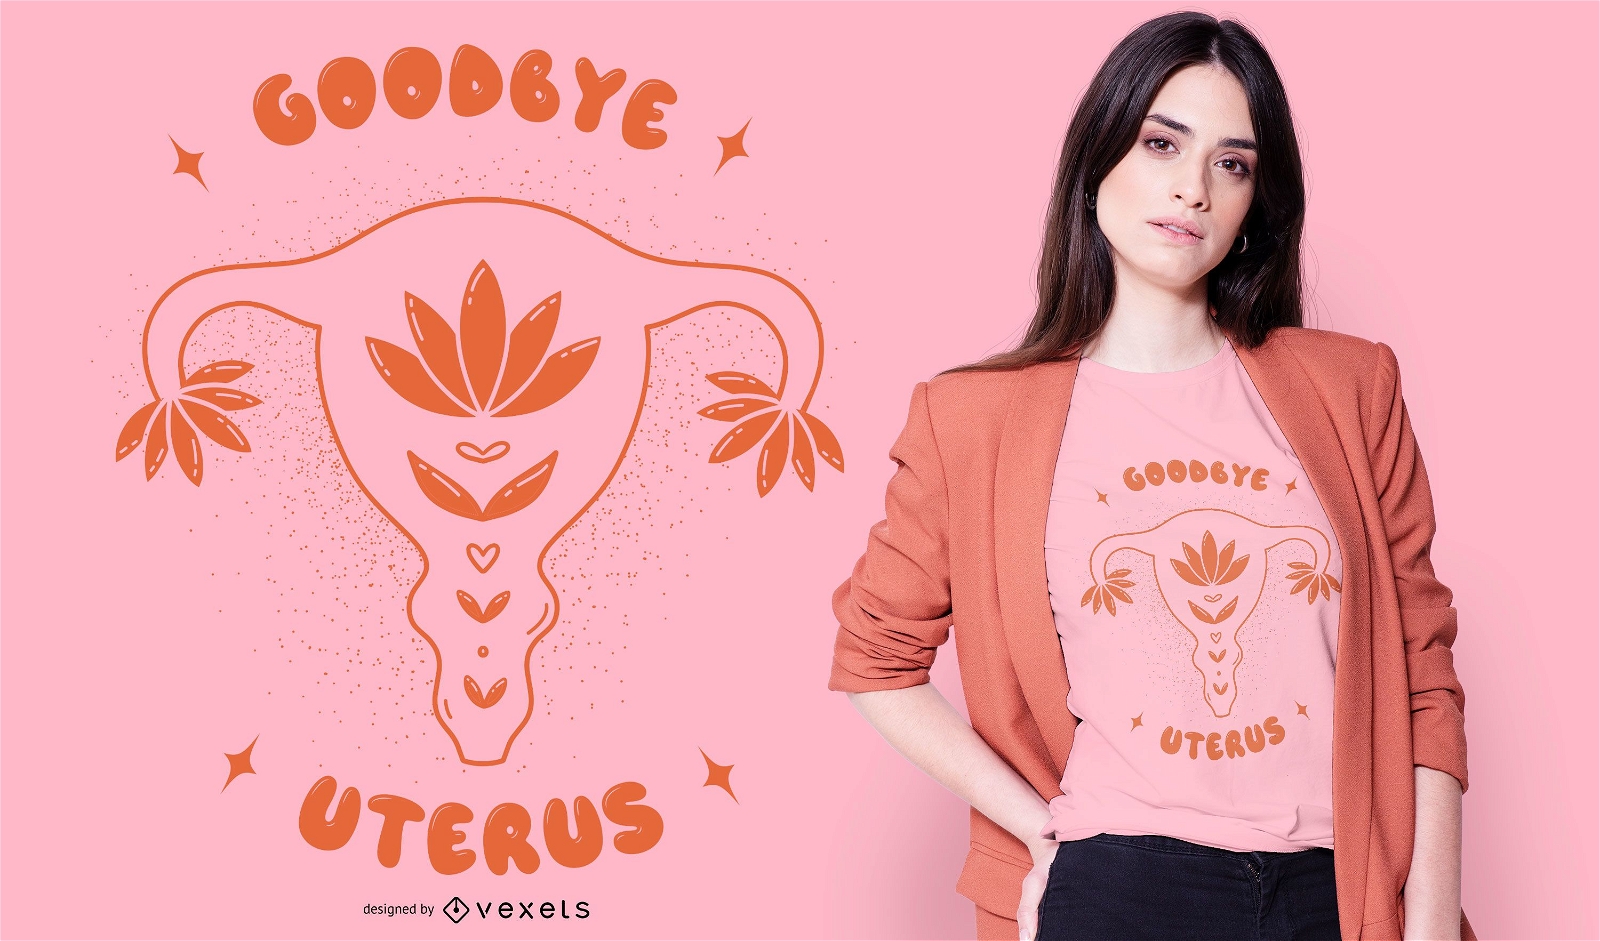 Goodbye Uterus T-shirt Design